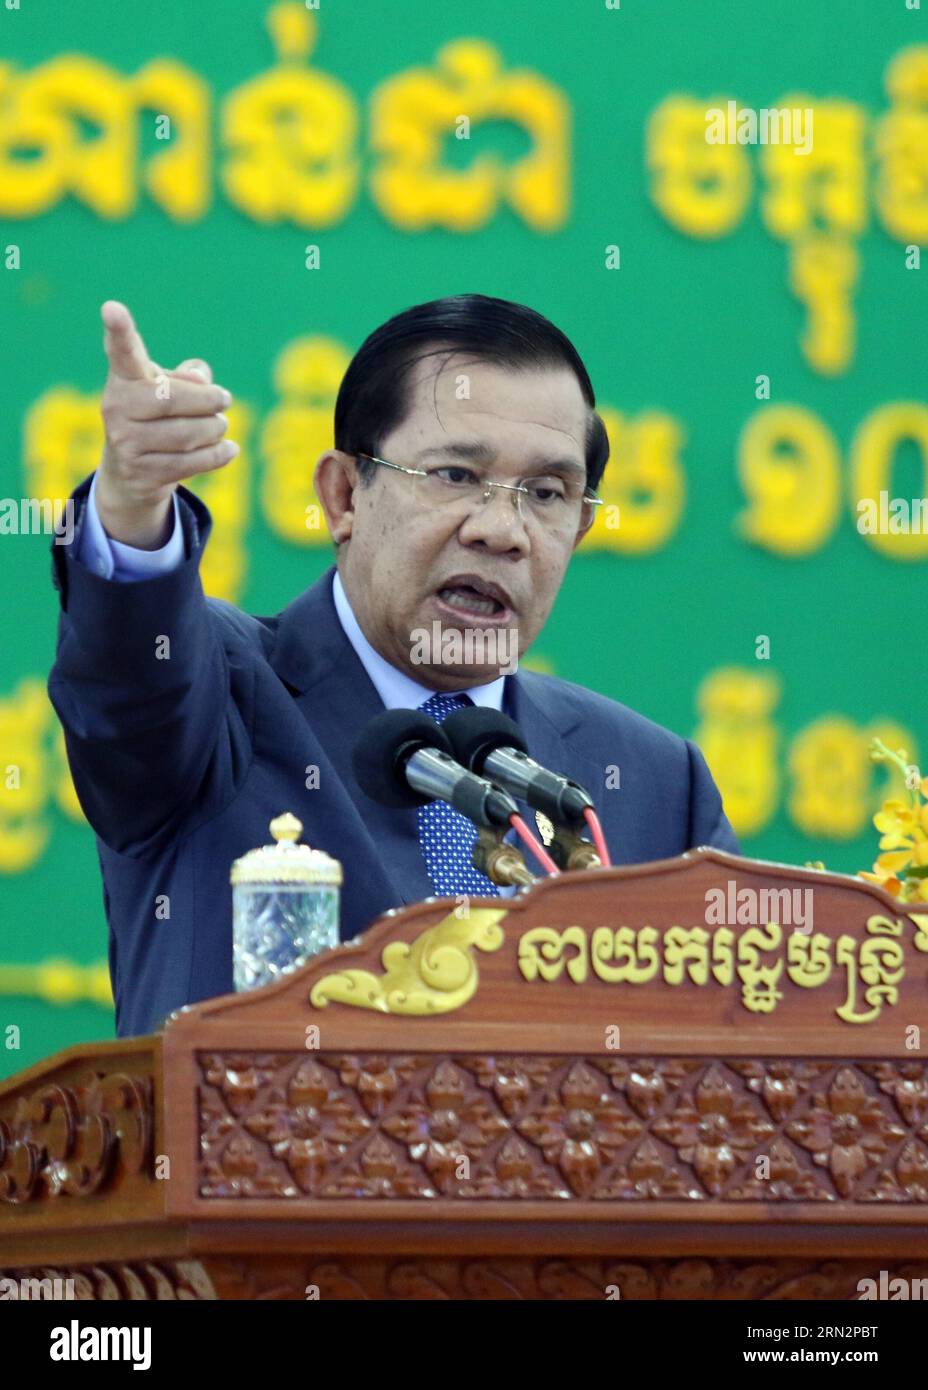 (150319) -- PHNOM PENH, 19 marzo 2015 -- il primo ministro cambogiano Hun Sen parla ad una cerimonia di premiazione di borse di studio presso l'Università della Cambogia a Phnom Penh, Cambogia, 19 marzo 2015. Giovedì il primo ministro cambogiano Hun Sen ha accusato Kem Sokha, vicepresidente del Partito di salvataggio nazionale cambogiano (CNRP), di aver guidato le proteste post-elettorali nel 2013 in un complotto per rovesciare il governo. ) CAMBOGIA-PHNOM PENH-HUN SEN-ACCUSA Sovannara PUBLICATIONxNOTxINxCHN Phnom Penh 19 marzo 2015 i primi ministri cambogiani HUN Sen parla A una cerimonia di premiazione di una borsa di studio PRESSO l'Università di Foto Stock